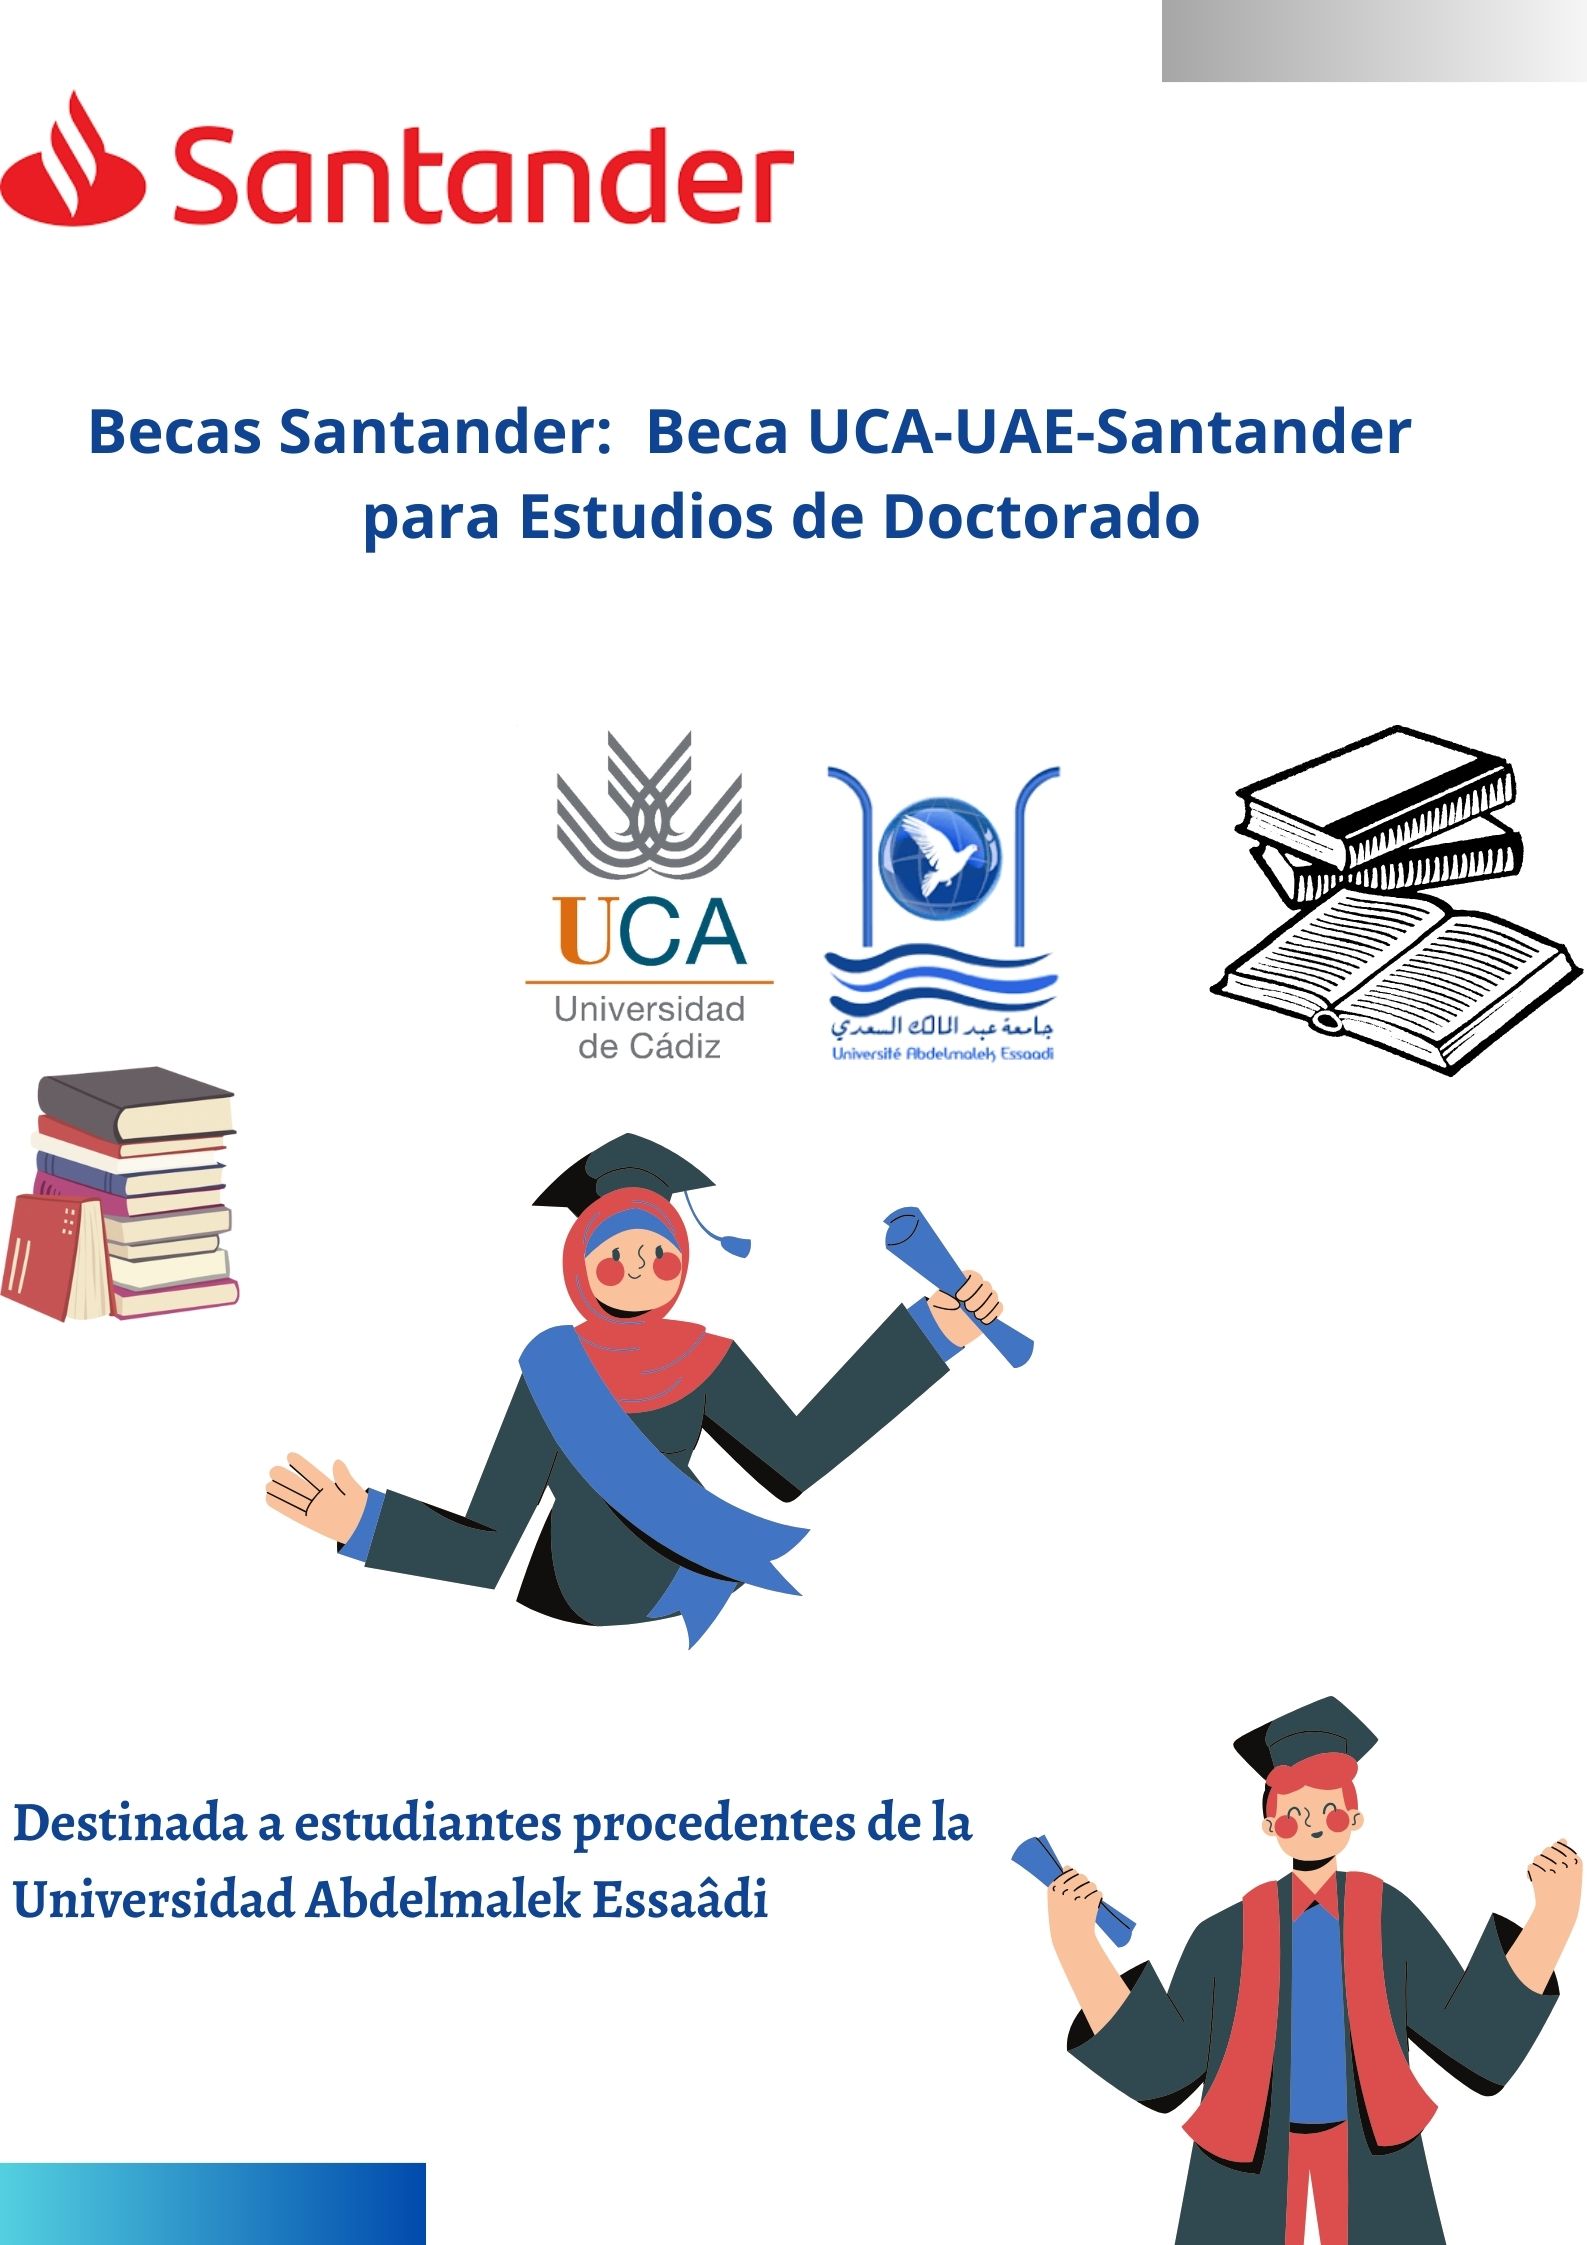 Beca UCA-UAE-Santander de Estudios de Doctorado